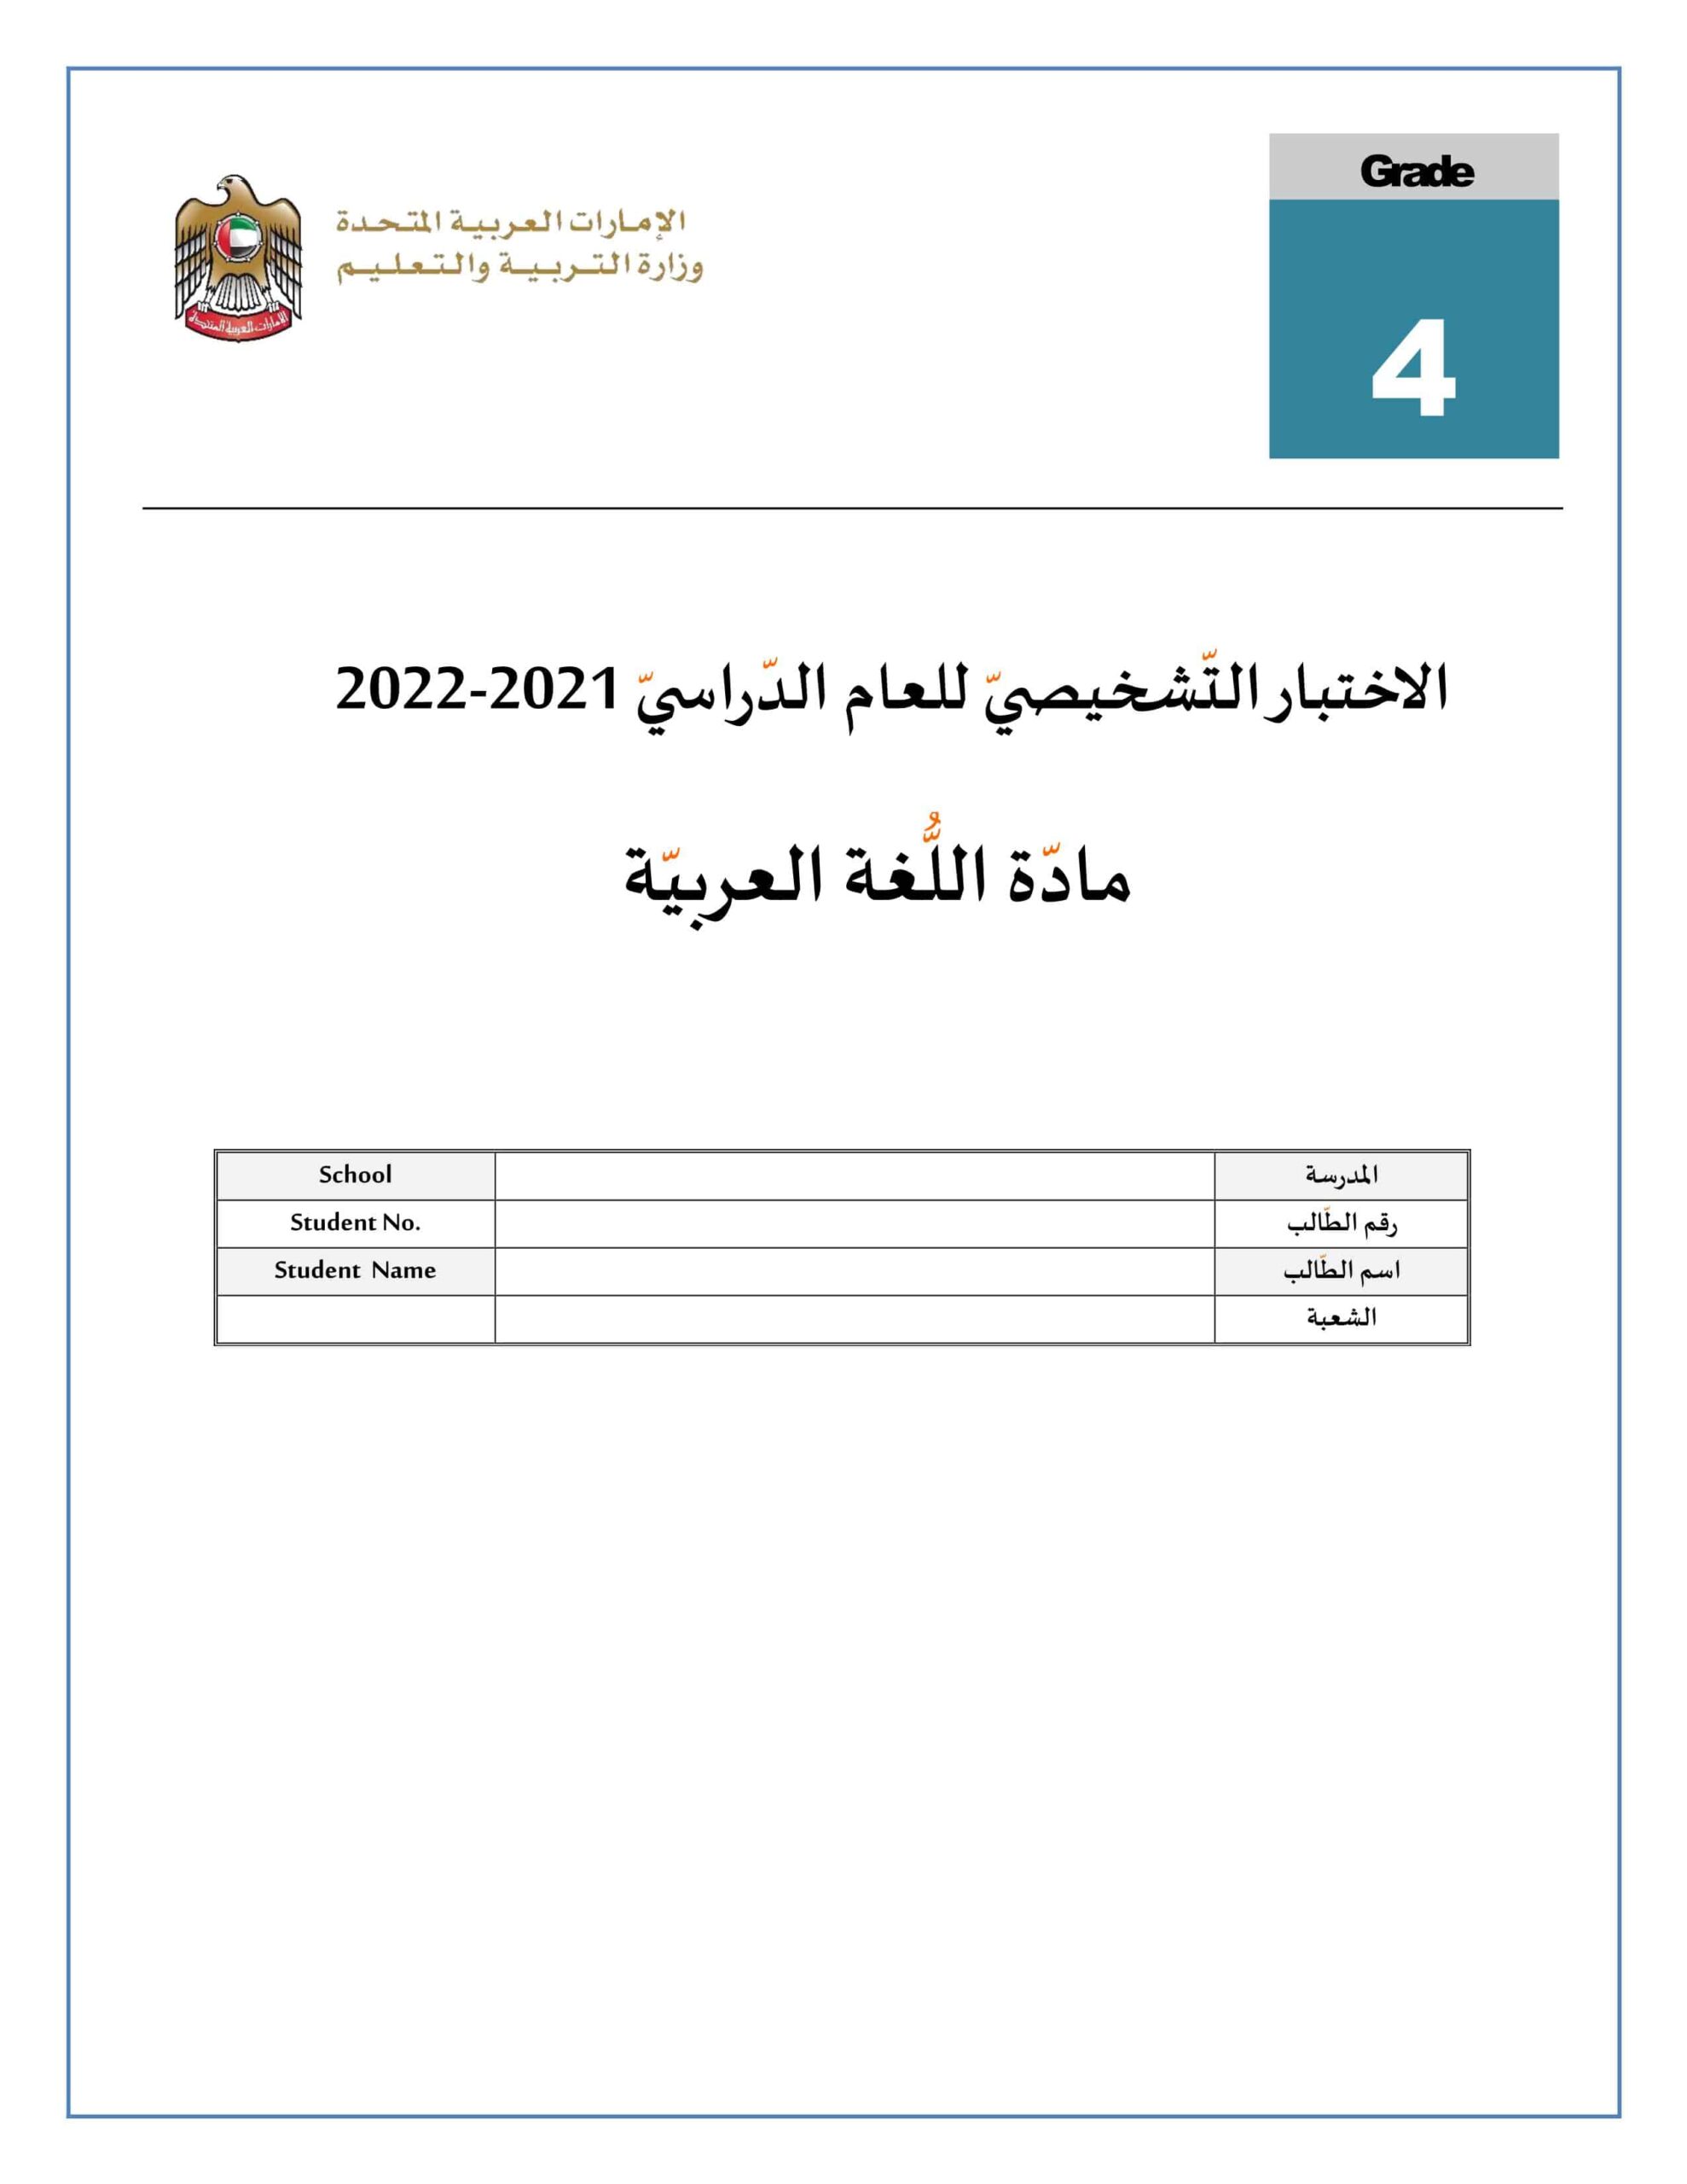 الاختبار التشخيصي اللغة العربية الصف الرابع الفصل الدراسي الأول 2021-2022